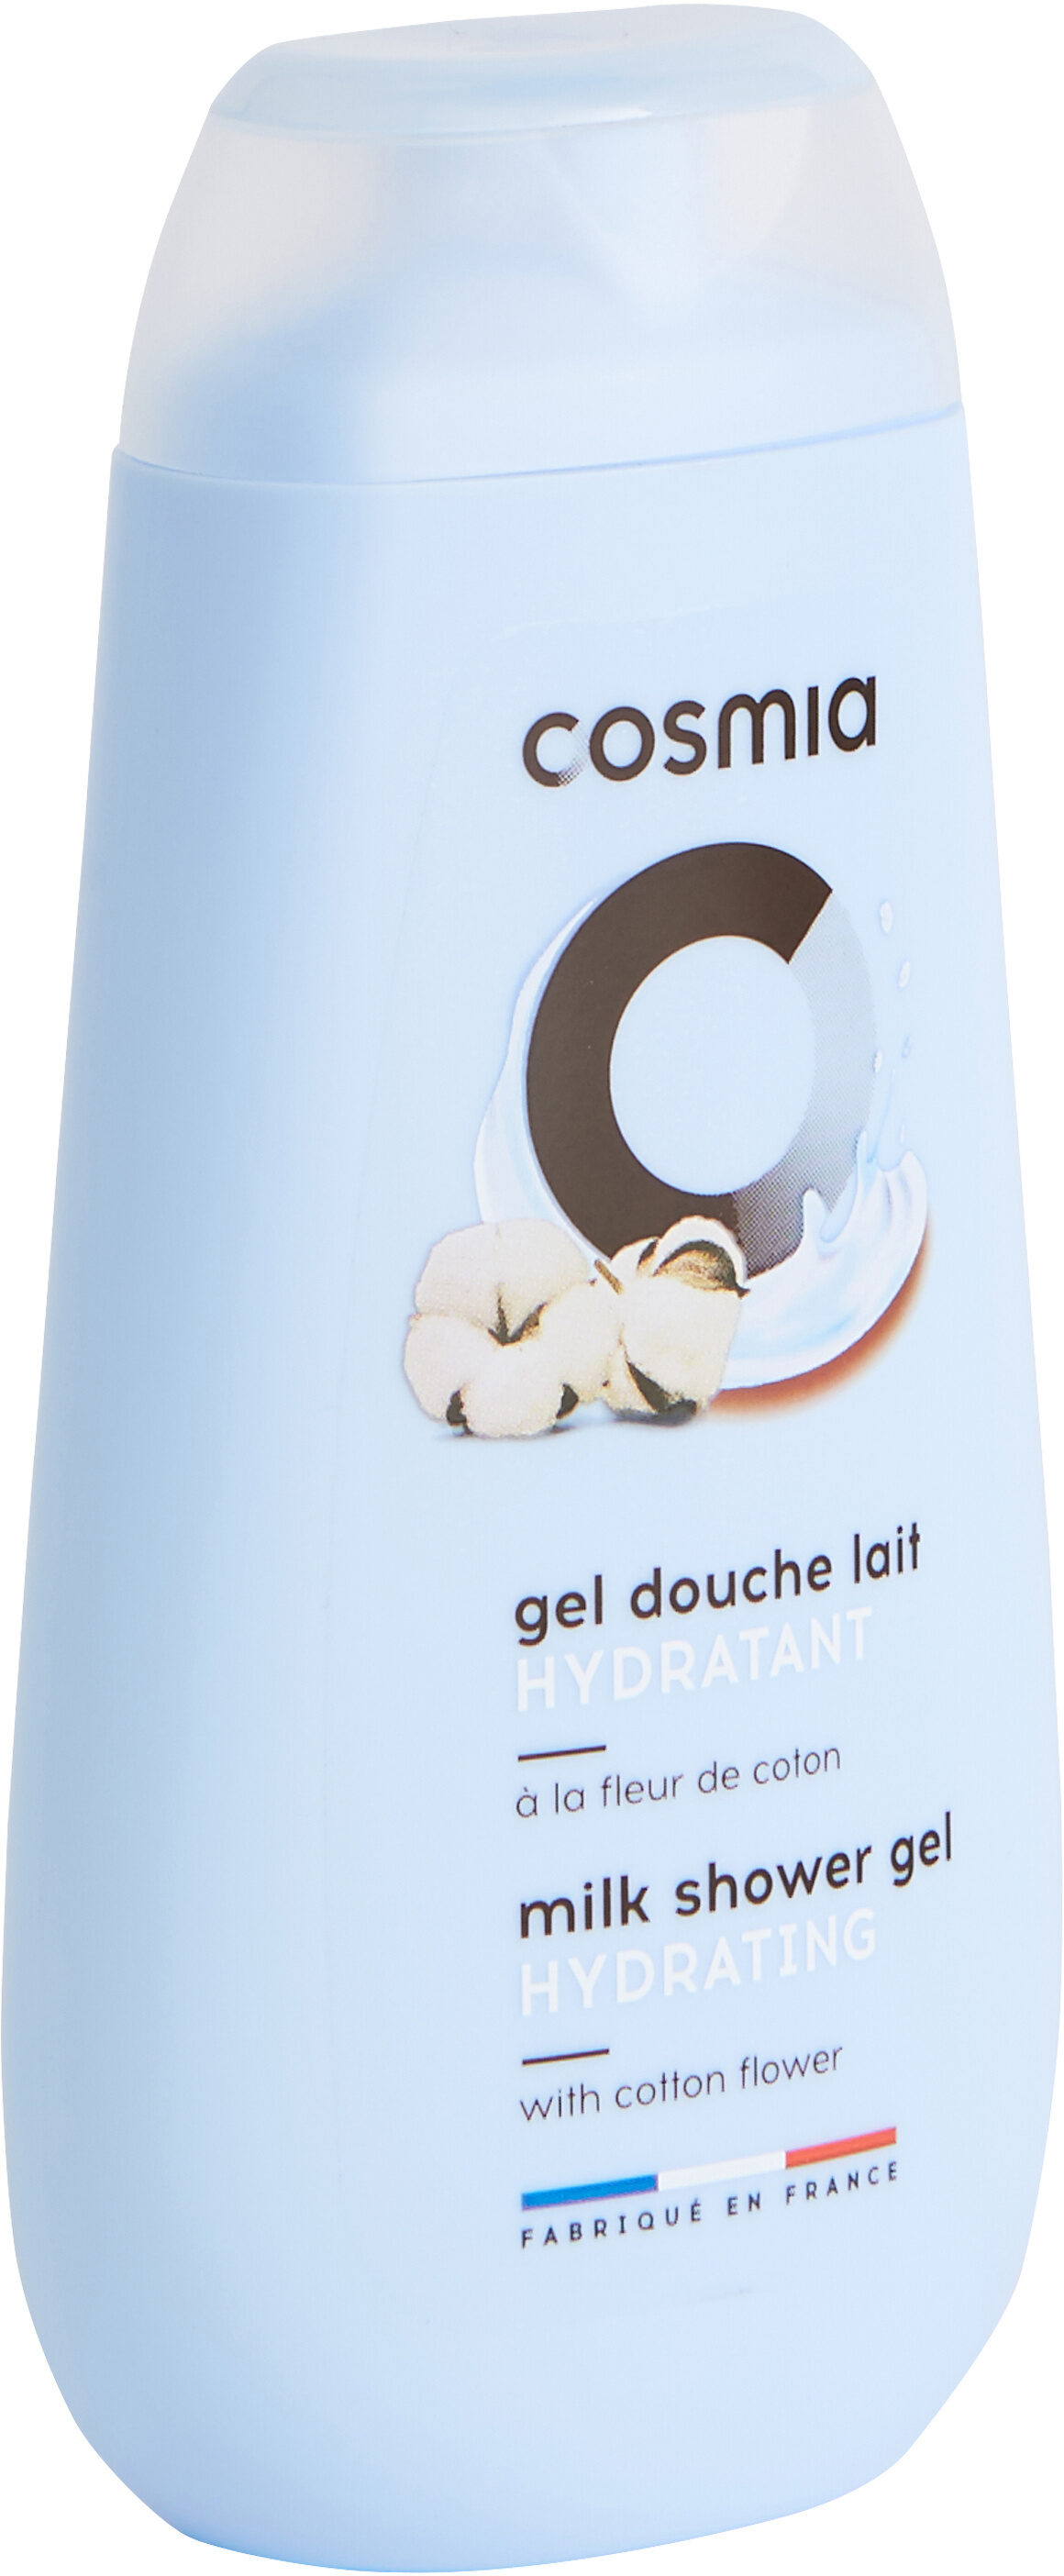 Cosmia gel douche lait hydratant a la fleur de coton - flacon avec capsule - Product - fr